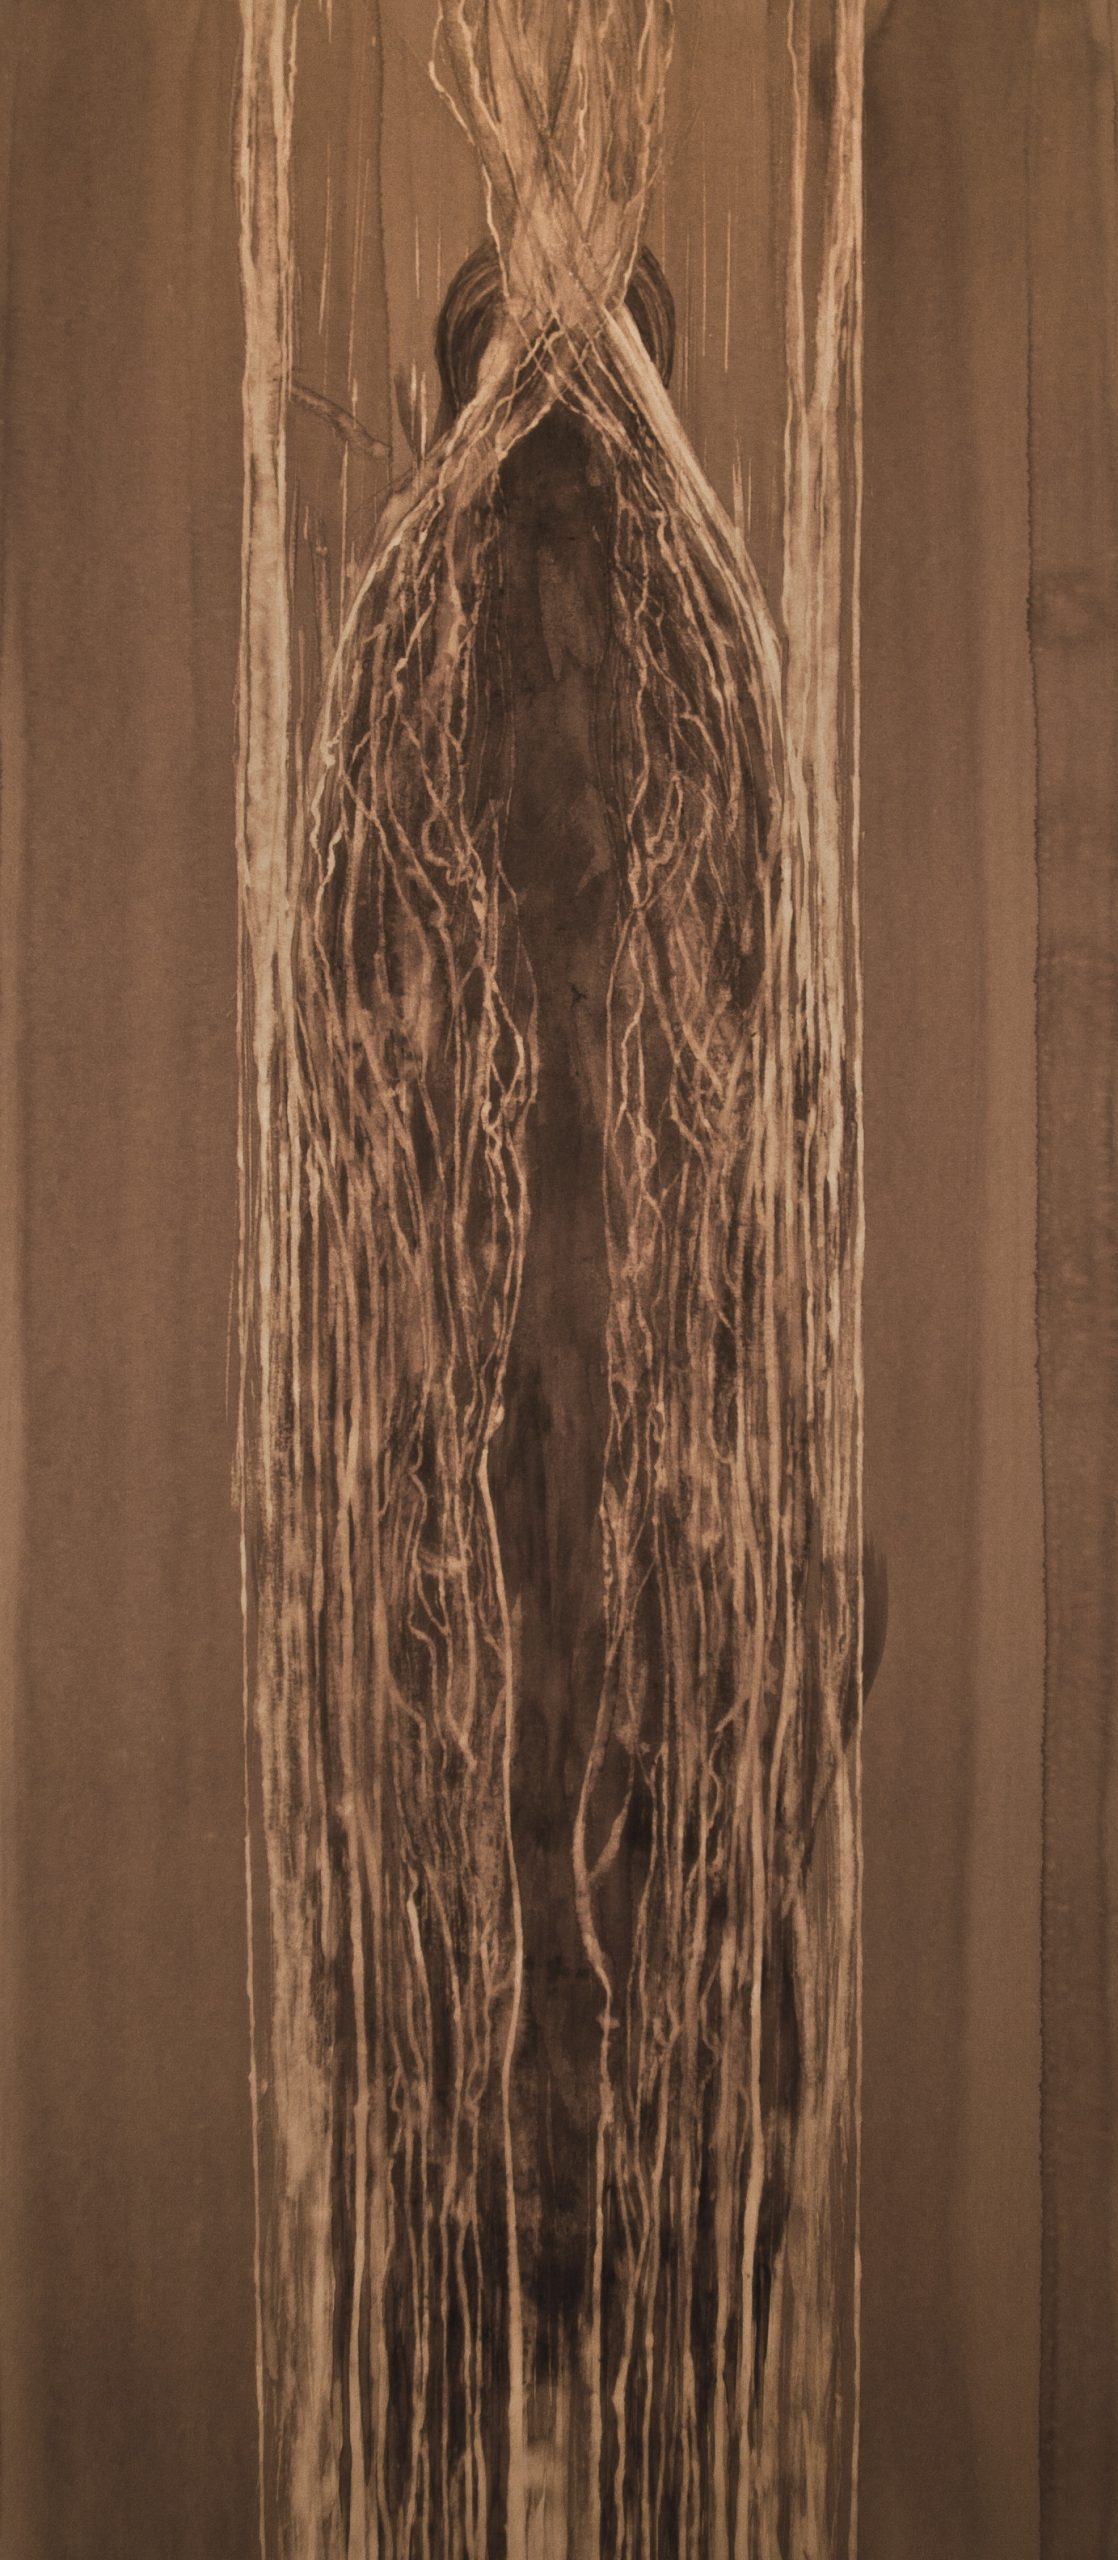 S005 - Brou de noix sur papier, 30cm x 66,5cm